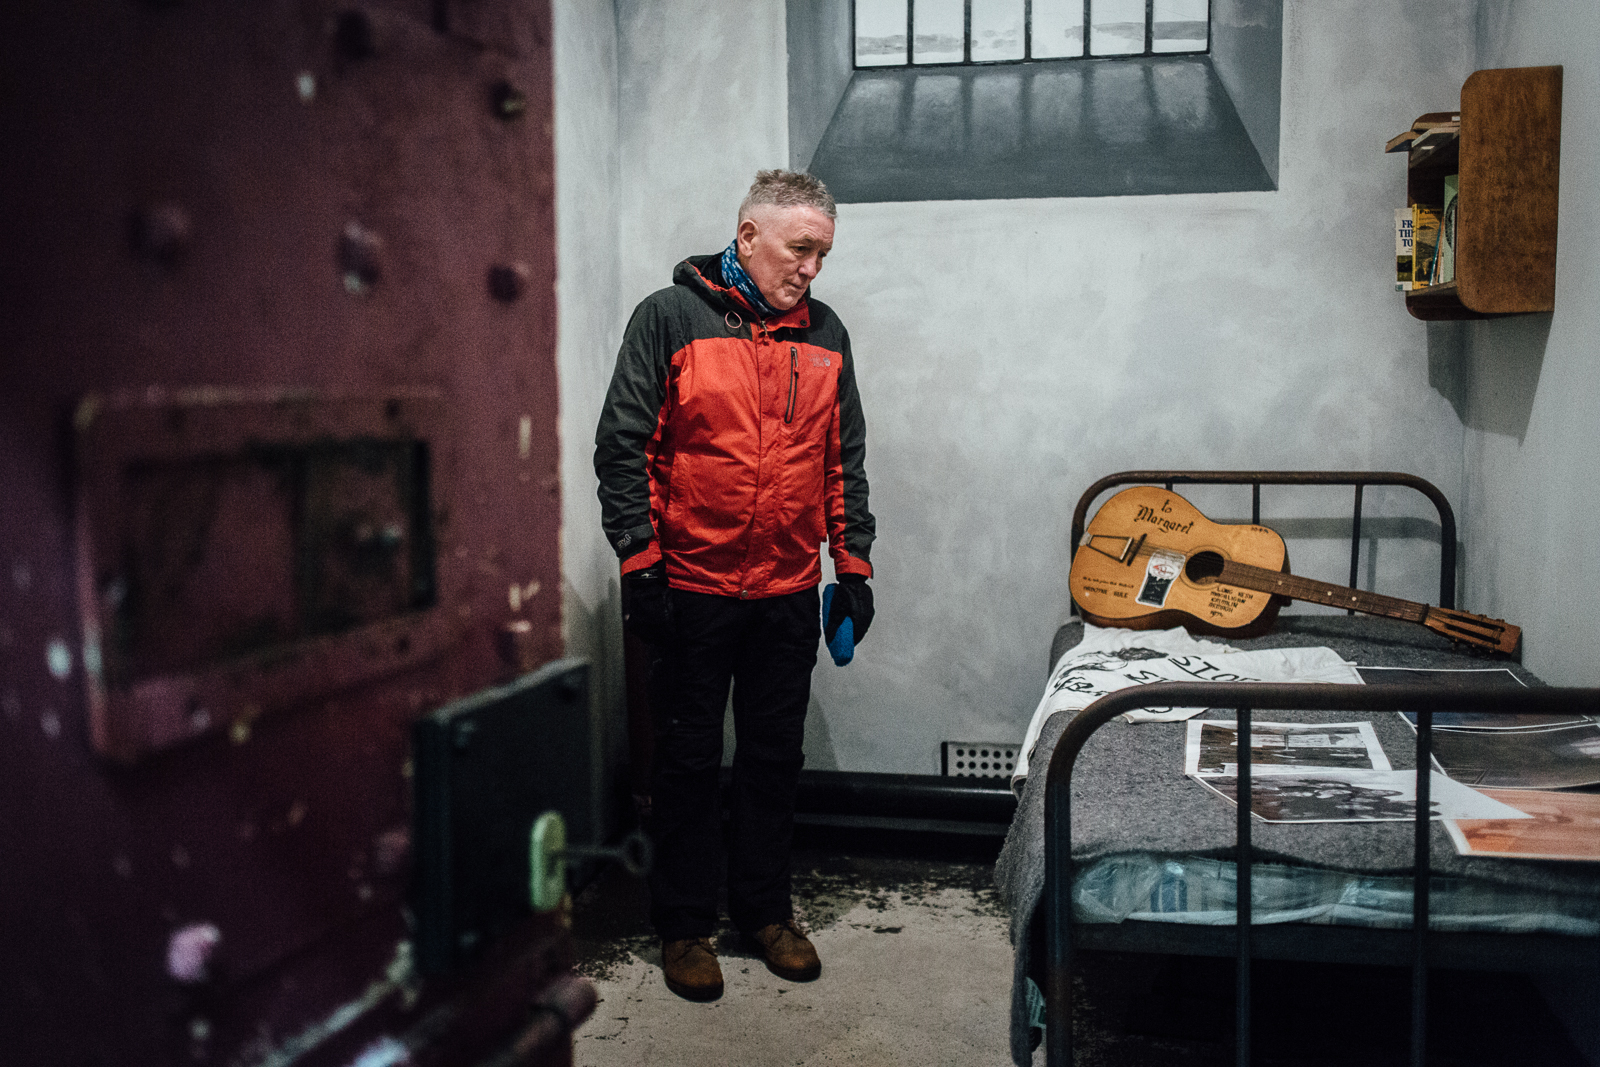 Belfast, le 23 Février 2017. Seamus, ancien membre de l'IRA (plusieurs années en prison, membre du mouvement des couvertures, "les blanket men") aujourd'hui membre d'une association qui raconte le conflit à des groupes de visiteurs étrangers. Ici dans la reproduction de la cellule d'une prison.